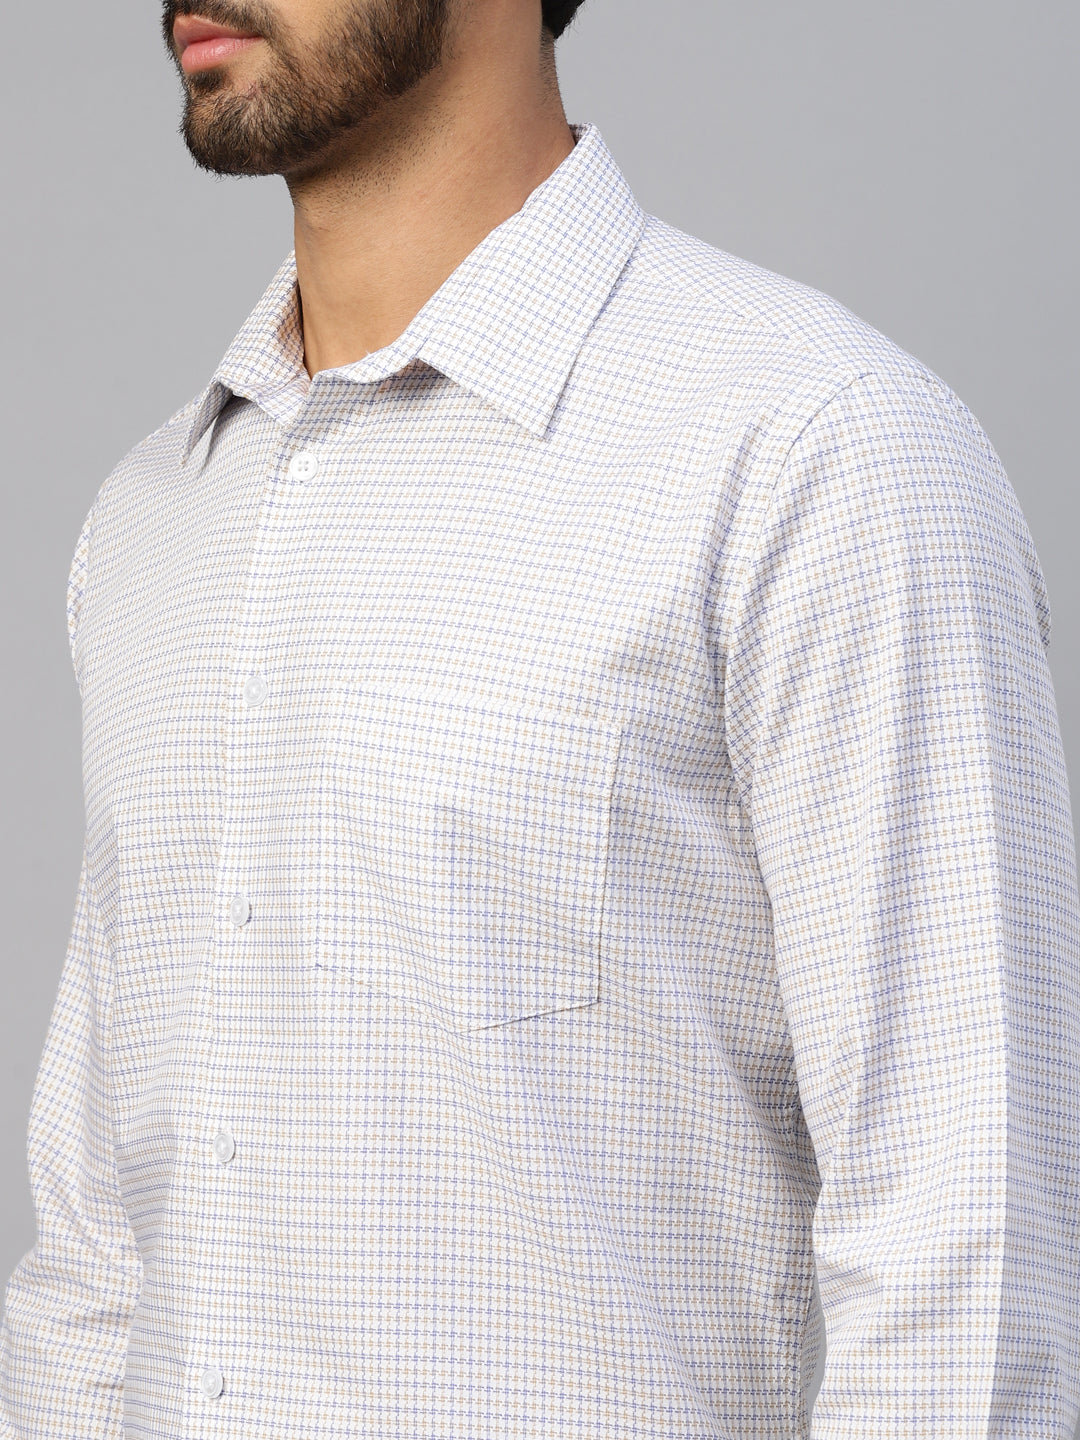 Men's White & Blue Small Checks Slim Fit Shirt